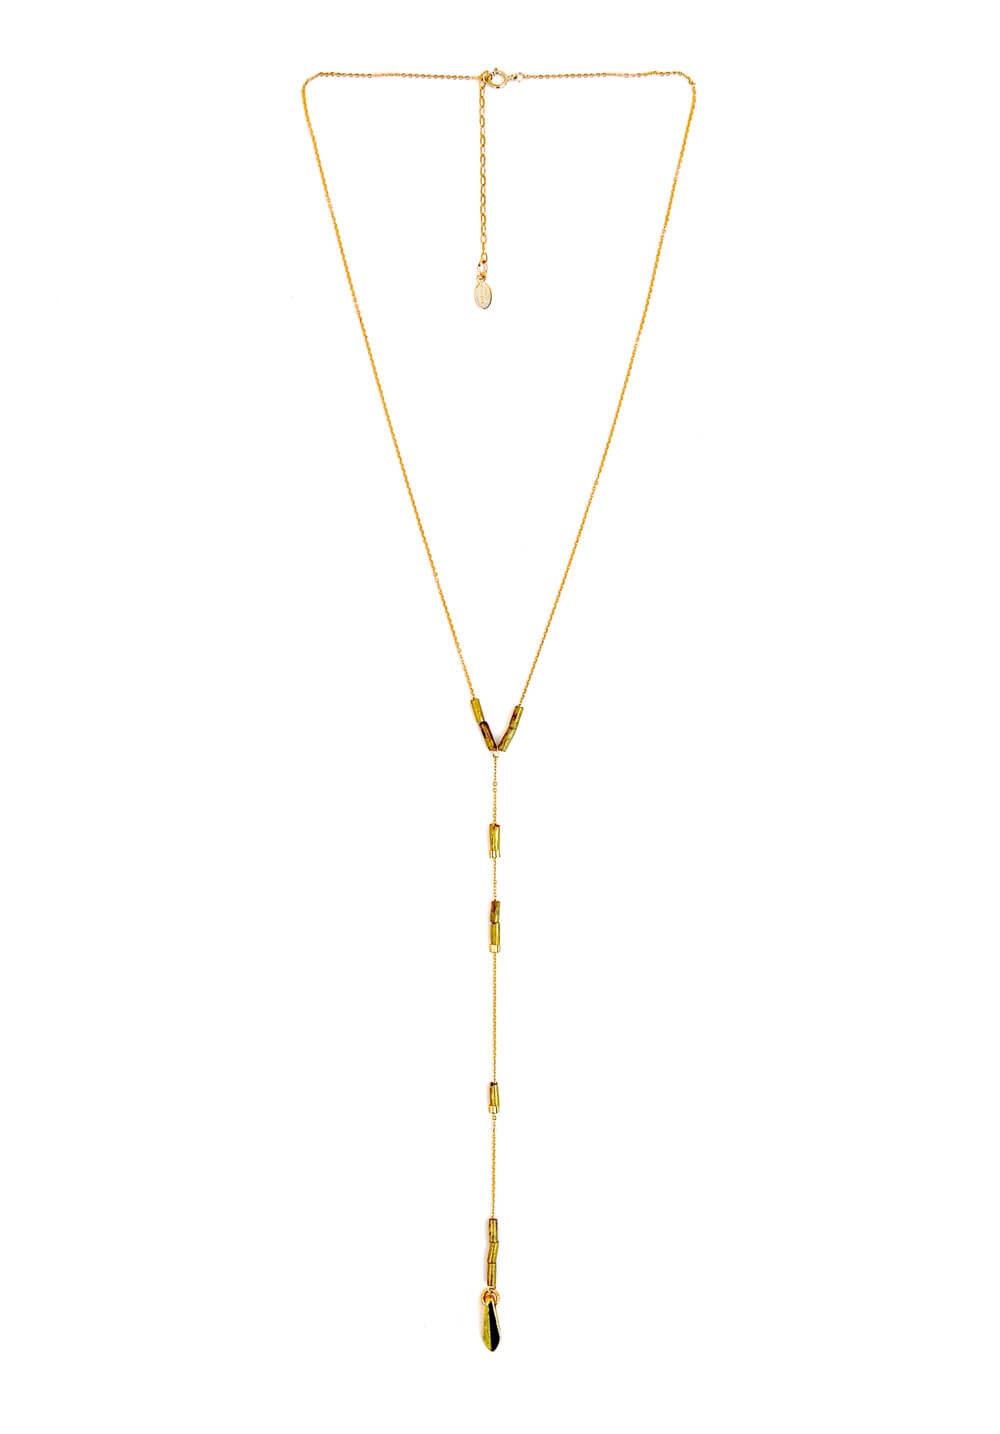 y necklace - gold